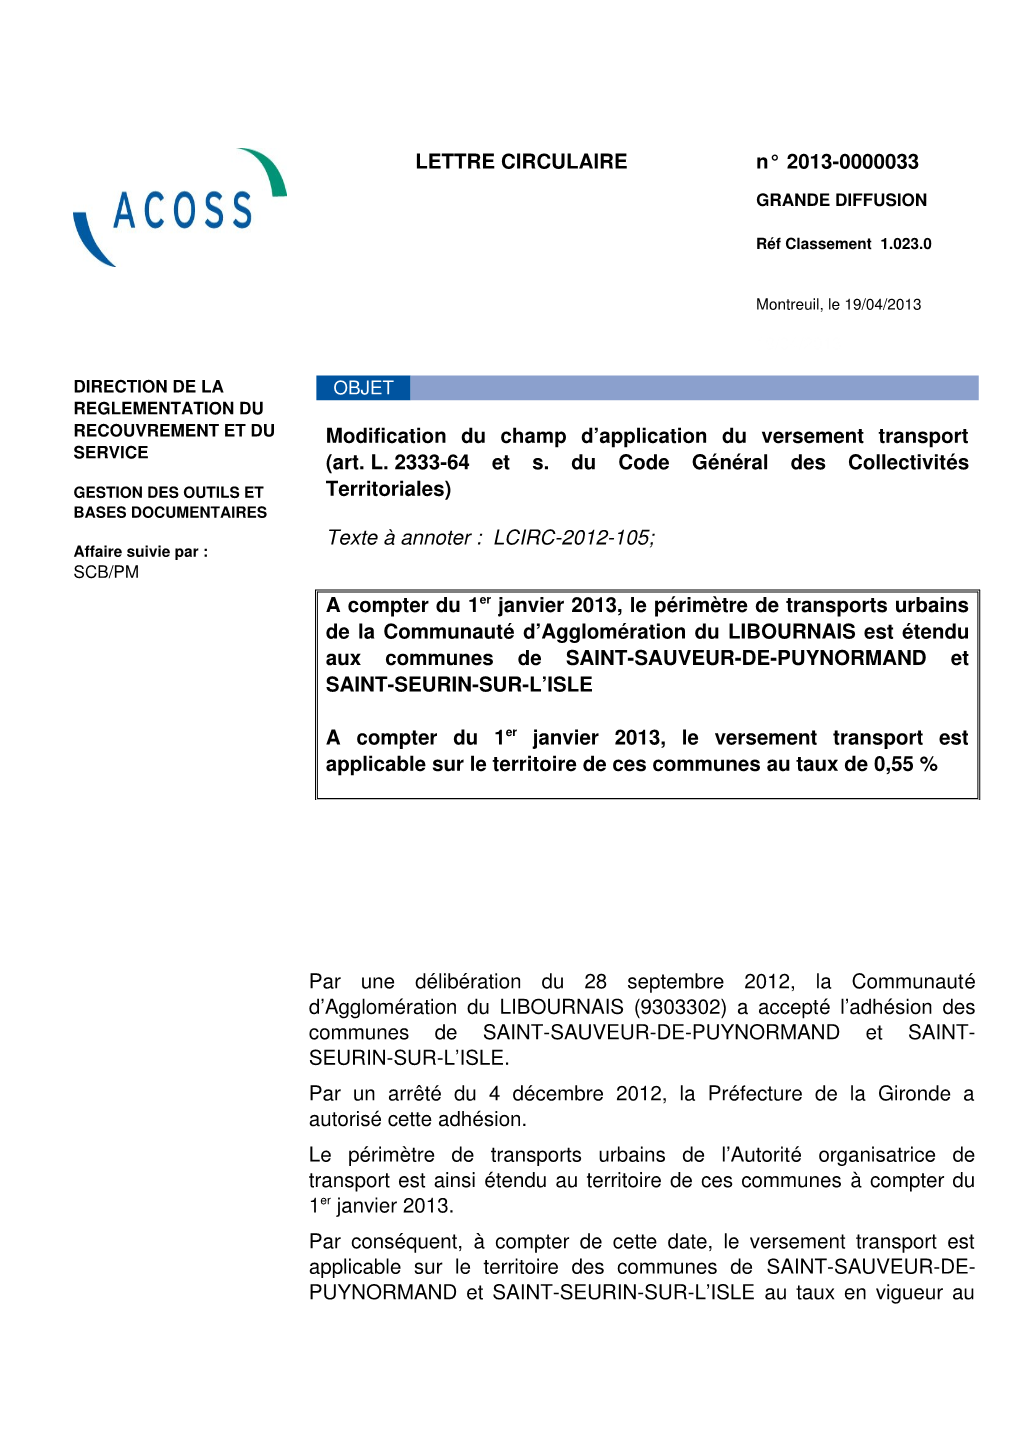 LETTRE CIRCULAIRE N° 20130000033 Modification Du Champ D'application Du Versement Transport